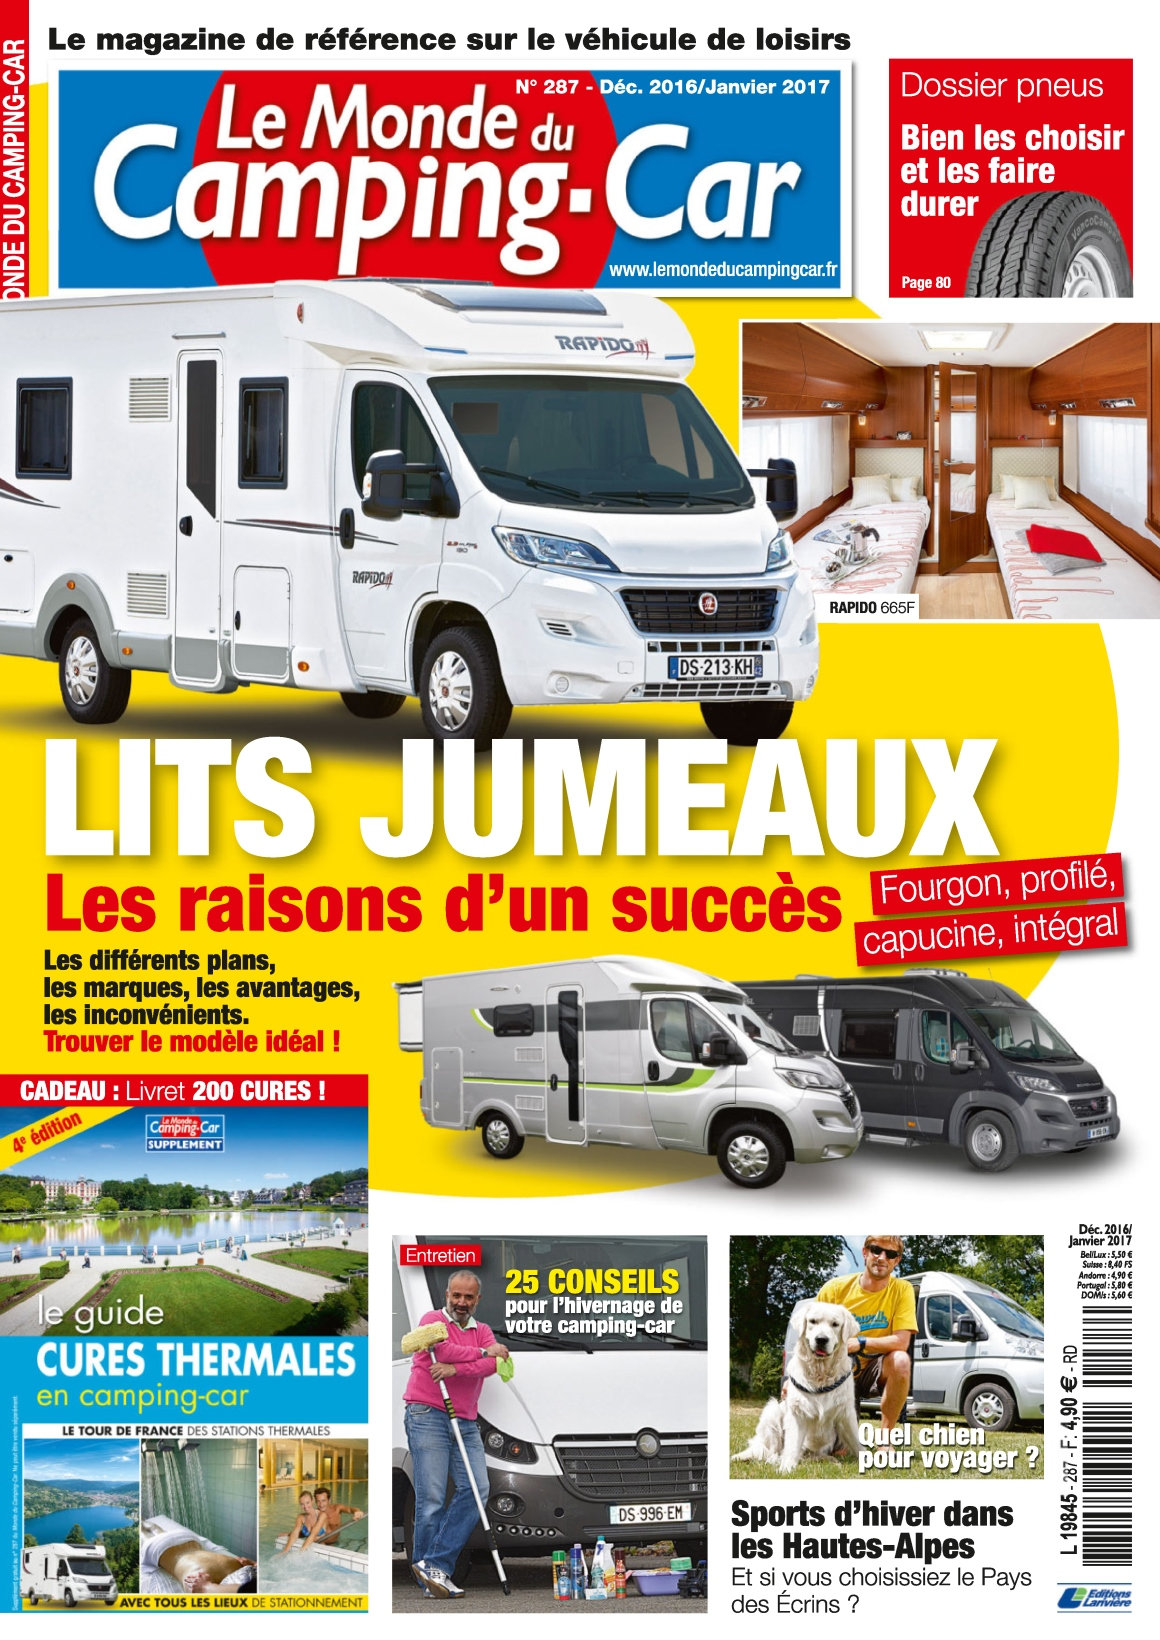 Le Monde du Camping-Car N°287 - Décembre 2016/Janvier 2017